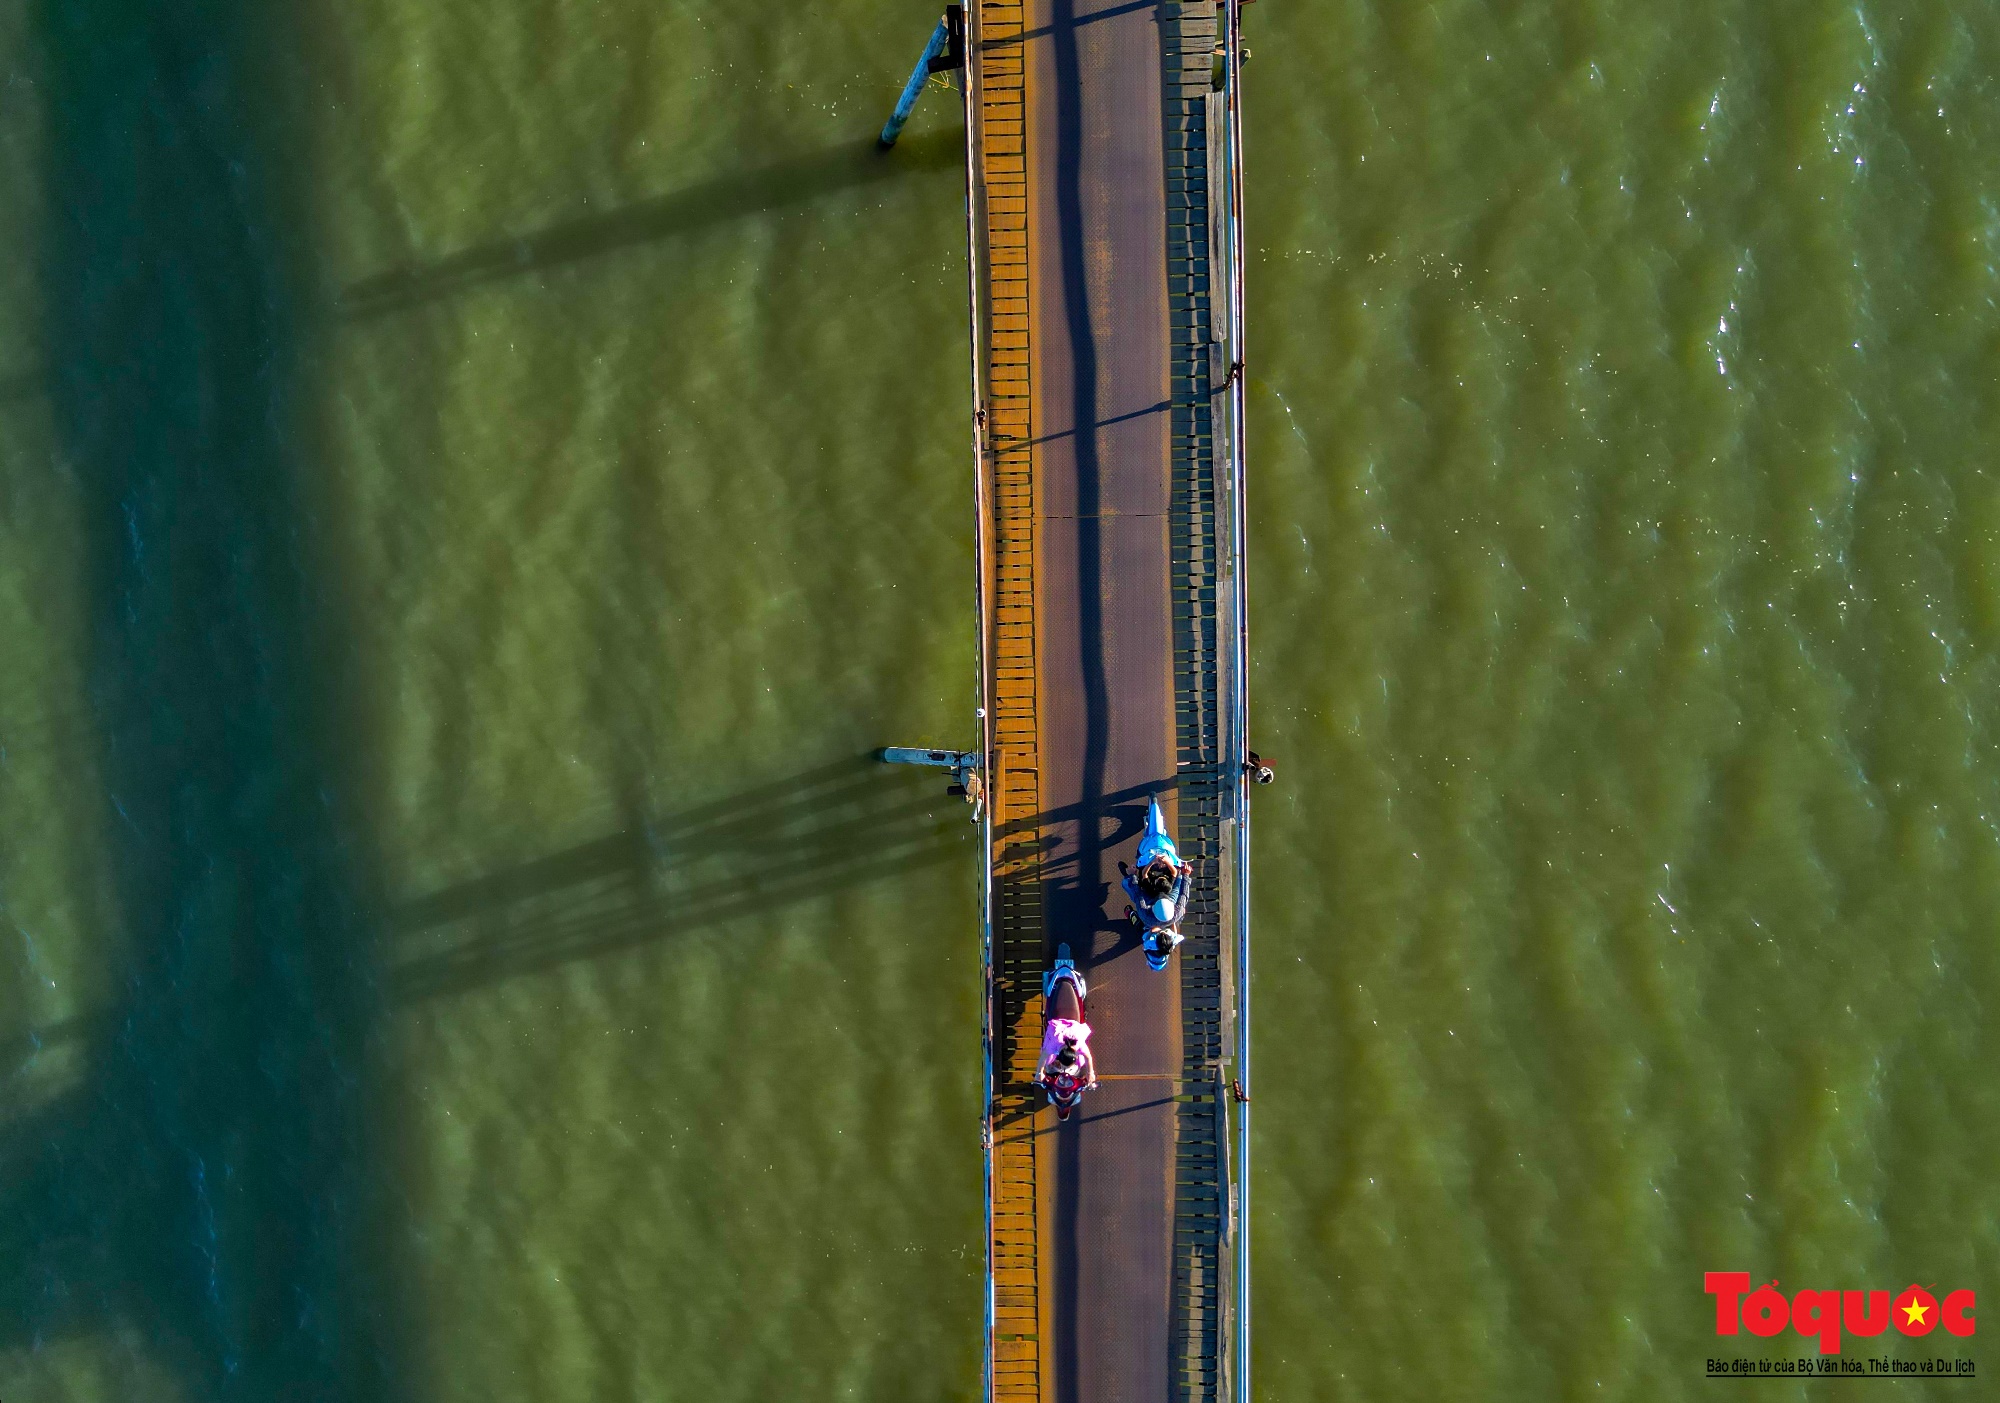 Cận cảnh cầu gỗ nối đôi bờ sông Cái ở Nha Trang vừa được chi gần 500 tỷ đồng để thay thế - Ảnh 11.